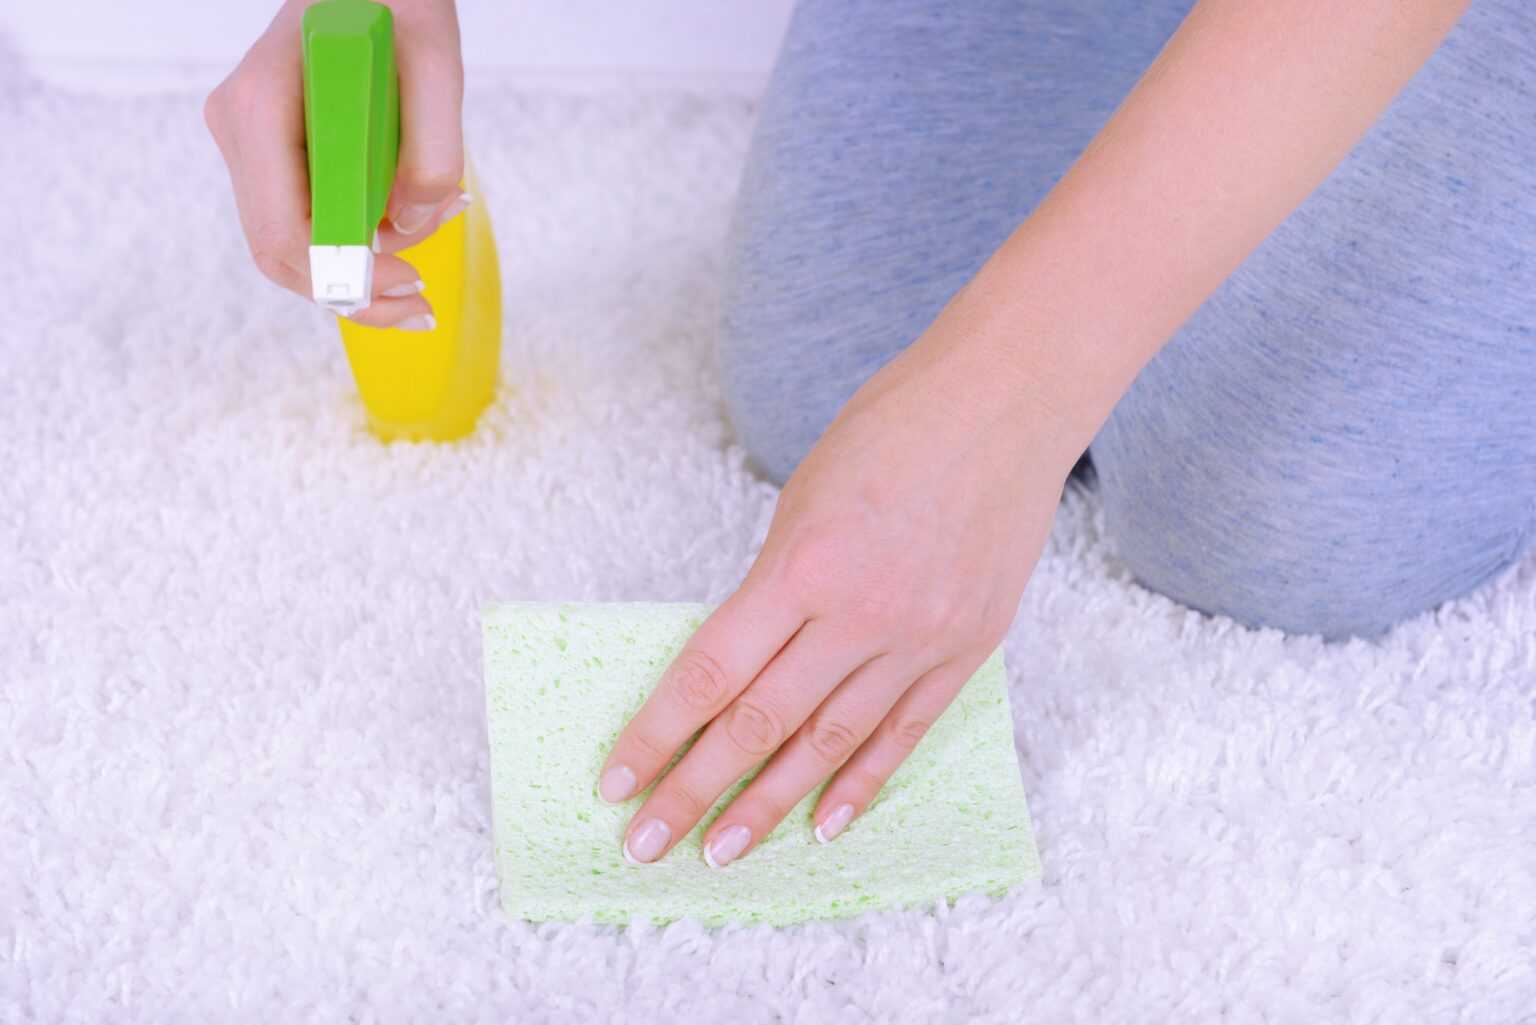 Как почистить ковер в домашних условиях быстро и эффективно (очень грязный, шелковый, синтетический, из вискозы и т.д.), как правильно и чем можно?